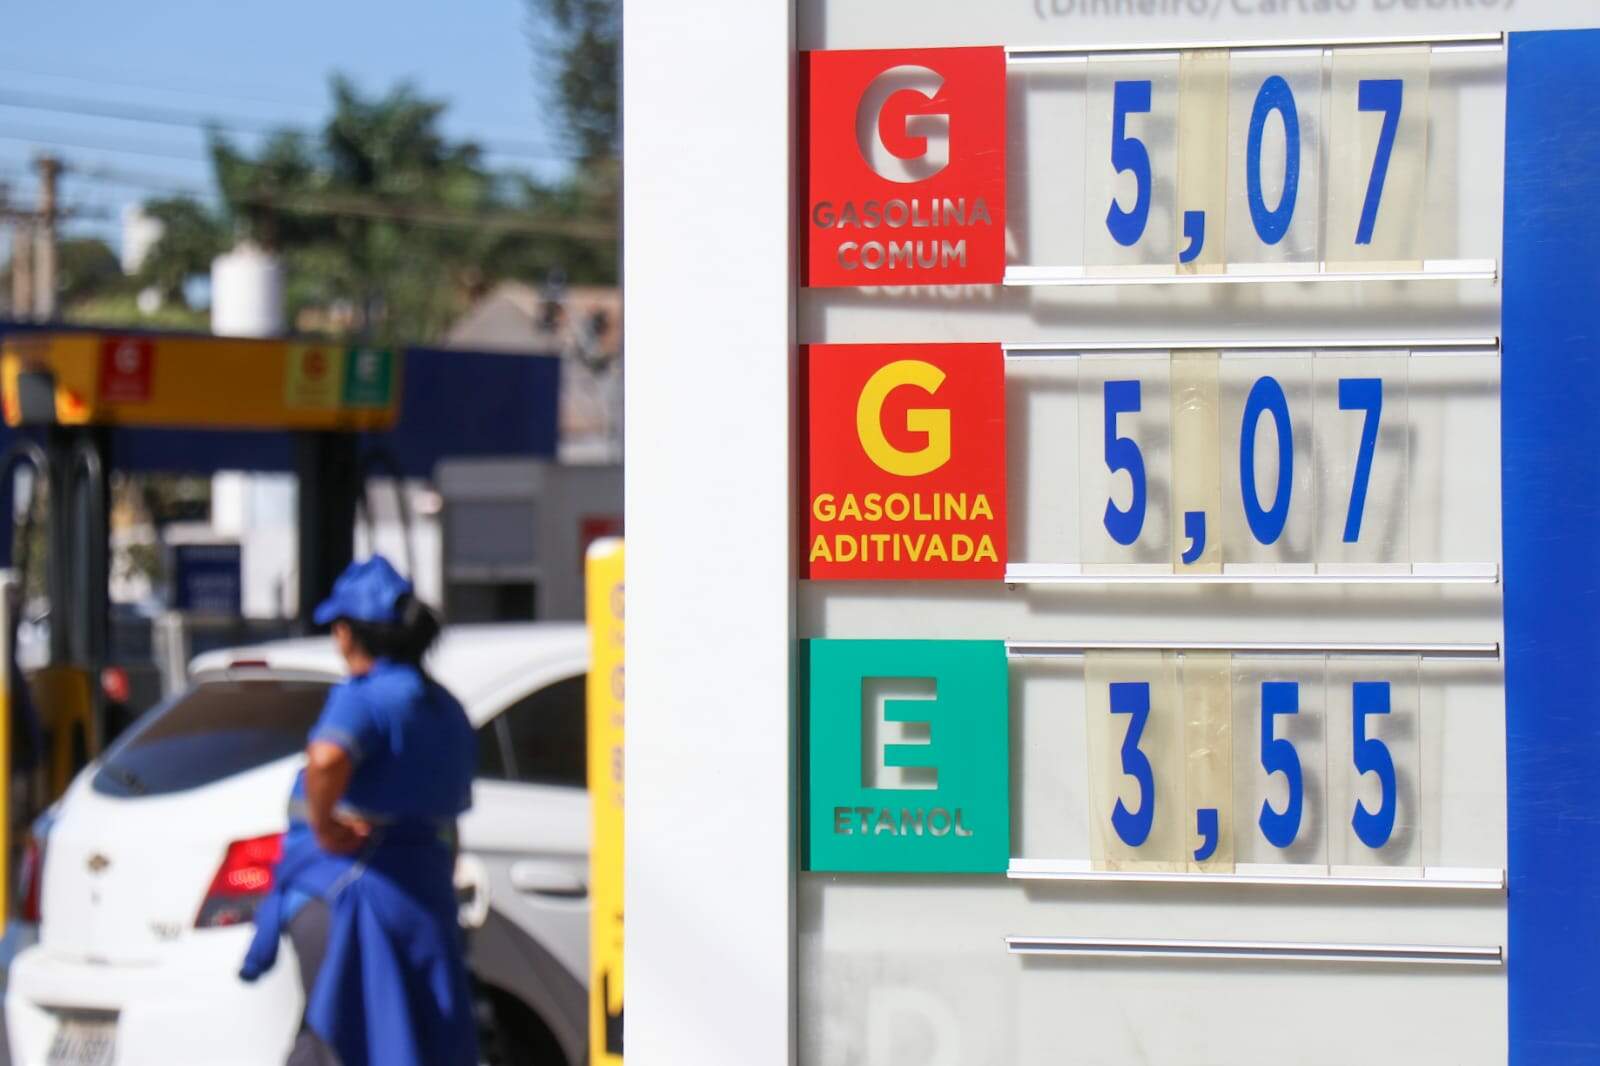 ICMS fixo vai praticamente anular queda de R$ 0,29 na gasolina, diz sindicato